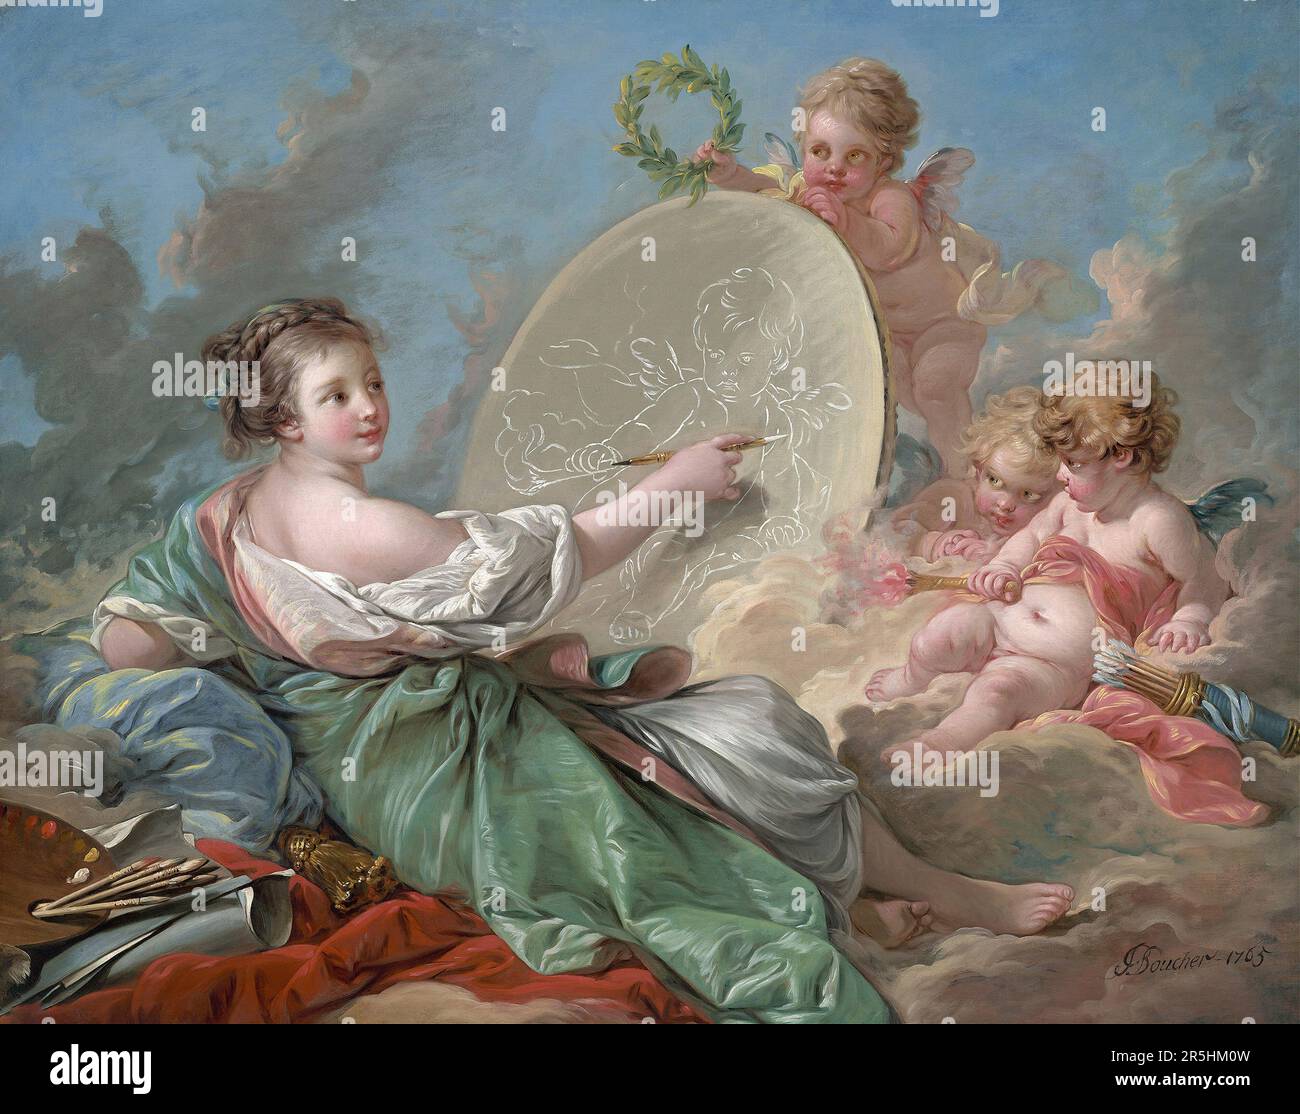 Allegorie der Malerei, gemalt von Francois Bouchard 1765. Obwohl heute kaum bekannt, war Francois Boucher einer der berühmtesten Maler des 18. Jahrhunderts in Frankreich. Er malte klassische Themen im Barock- und Rokoko-Stil. Seine Schirmherrin war Madame de Pompadour, und sein Werk war so beliebt, dass er schließlich Premier Peintre du ROI (erster Maler des Königs) wurde, ein angesehener Gerichtsstand im Antiker-Regime. Stockfoto